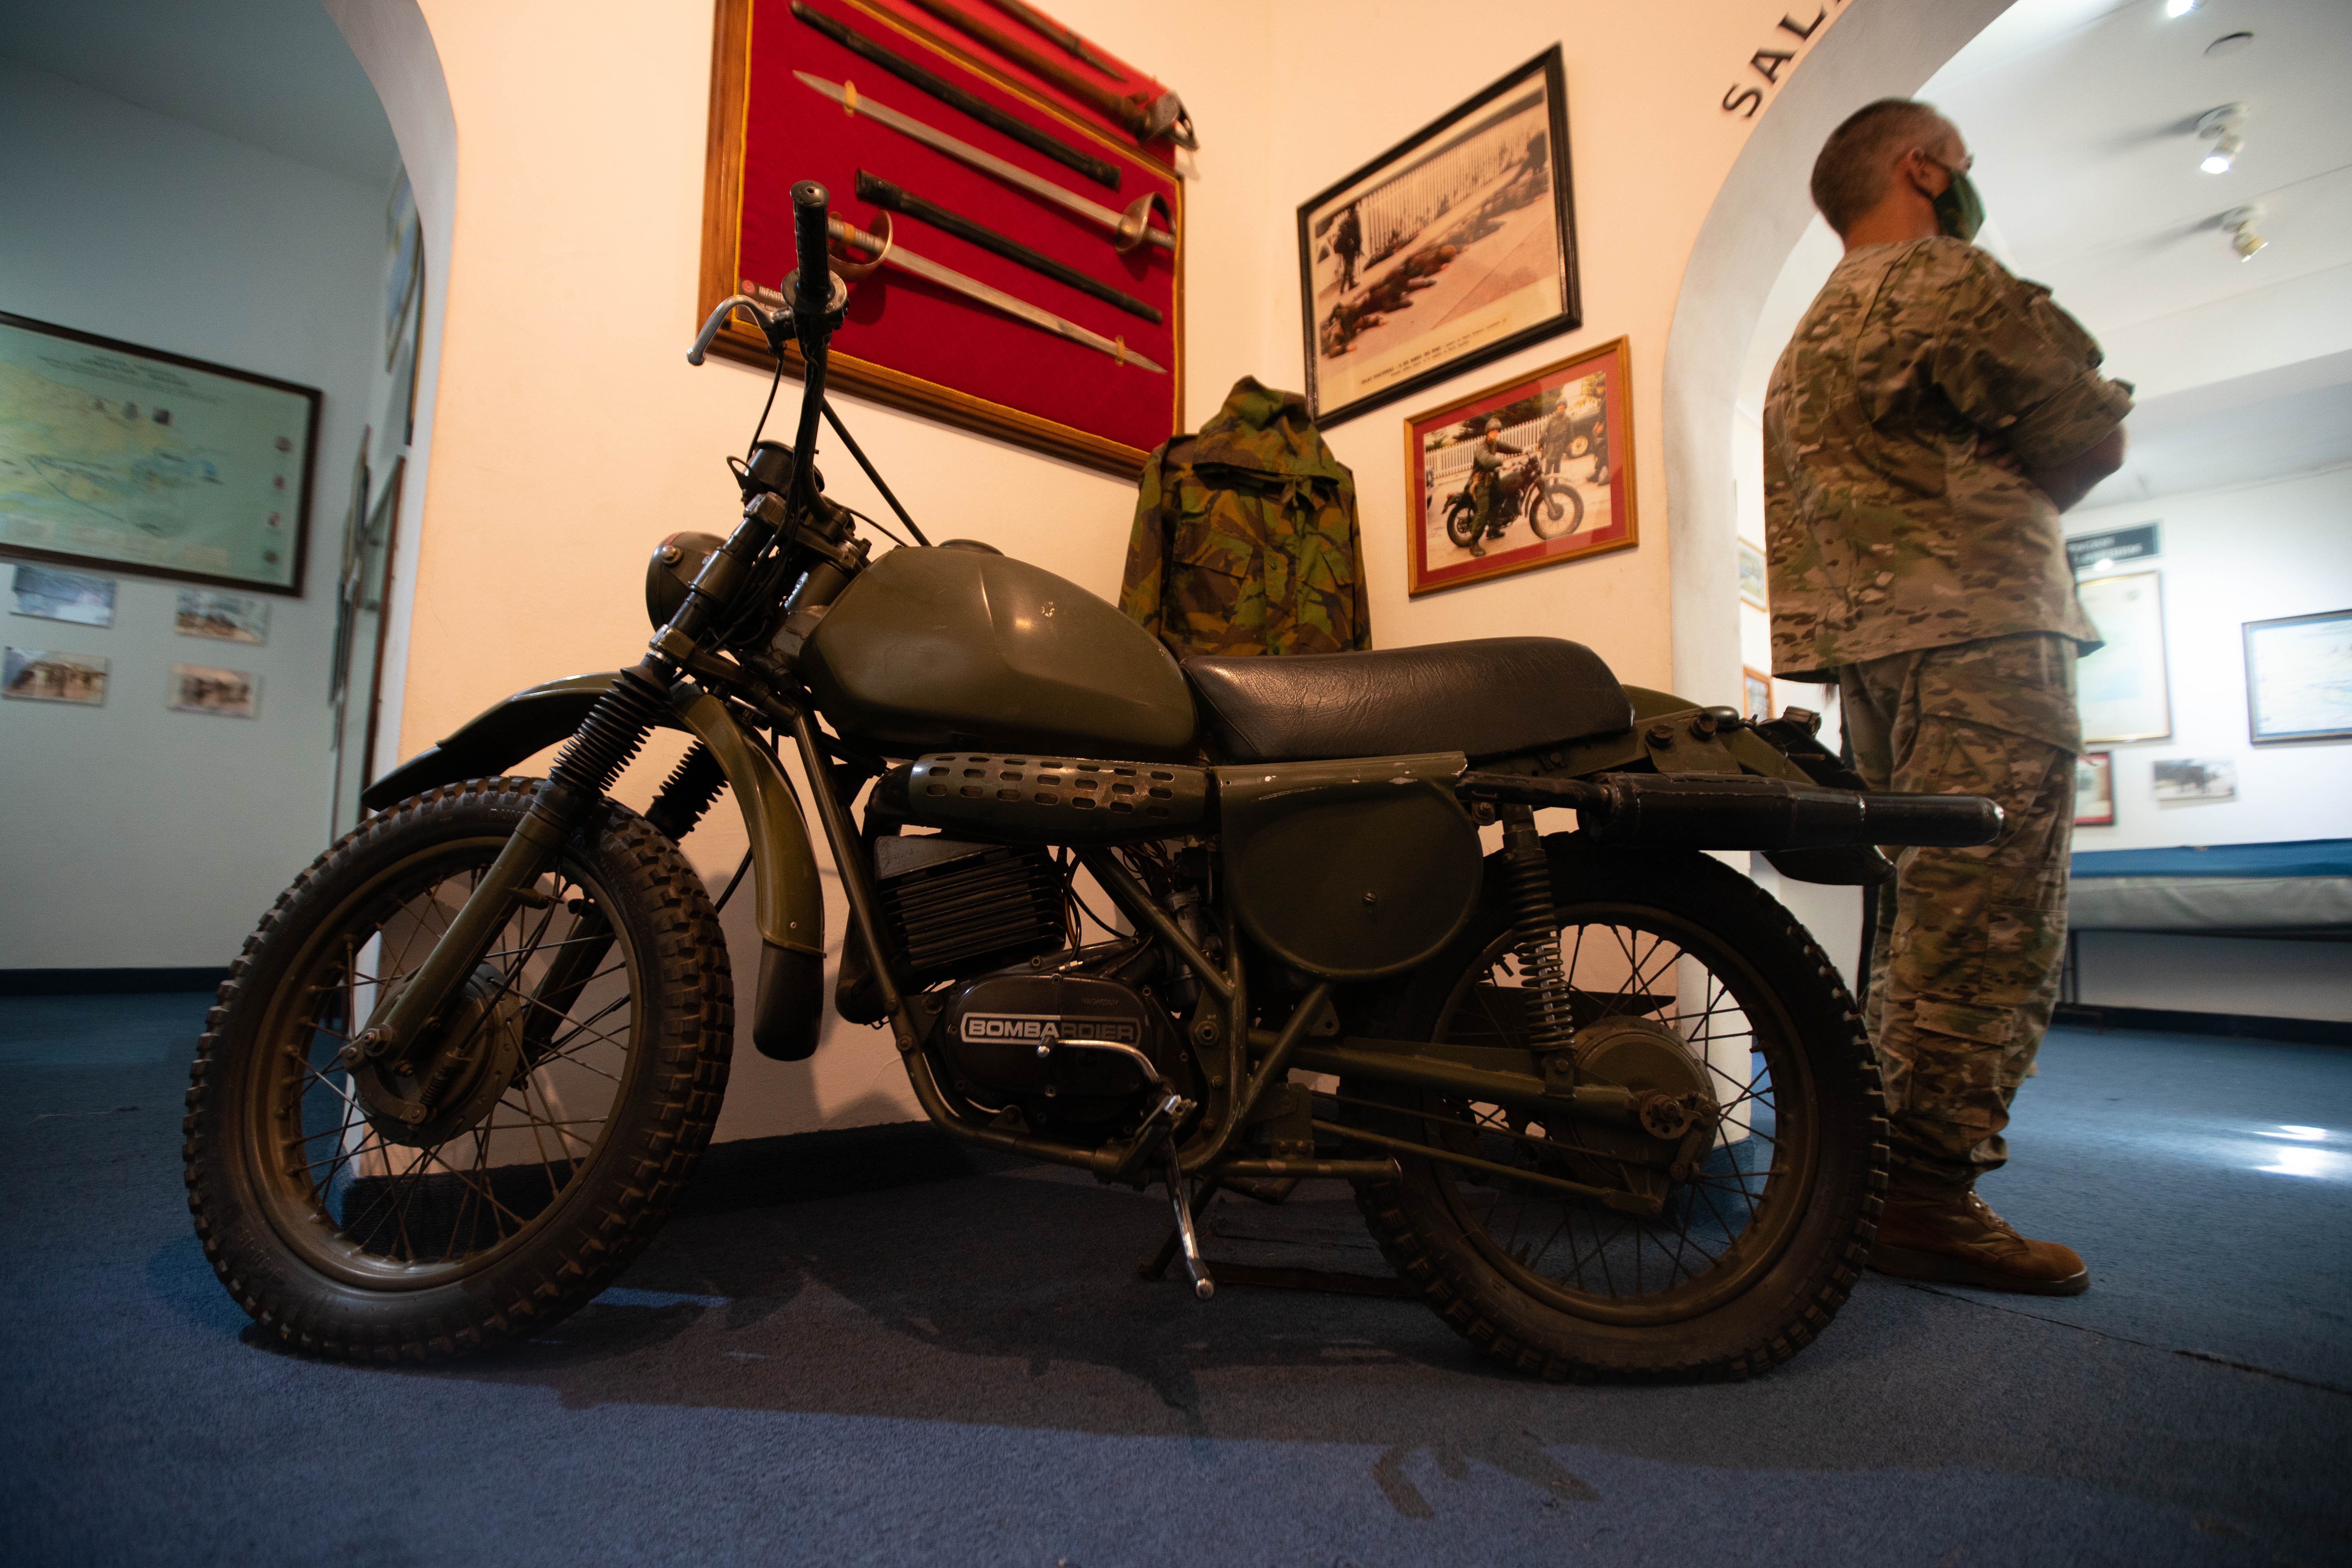 La motocicleta usada por el mensajero del gobernador colonial de Malvinas Rex Hunt, reposa en el Museo de la Infantería de Marina luego de haber sido traída al continente luego del desembarco argentino en la madrugada del 02 de abril de 1982